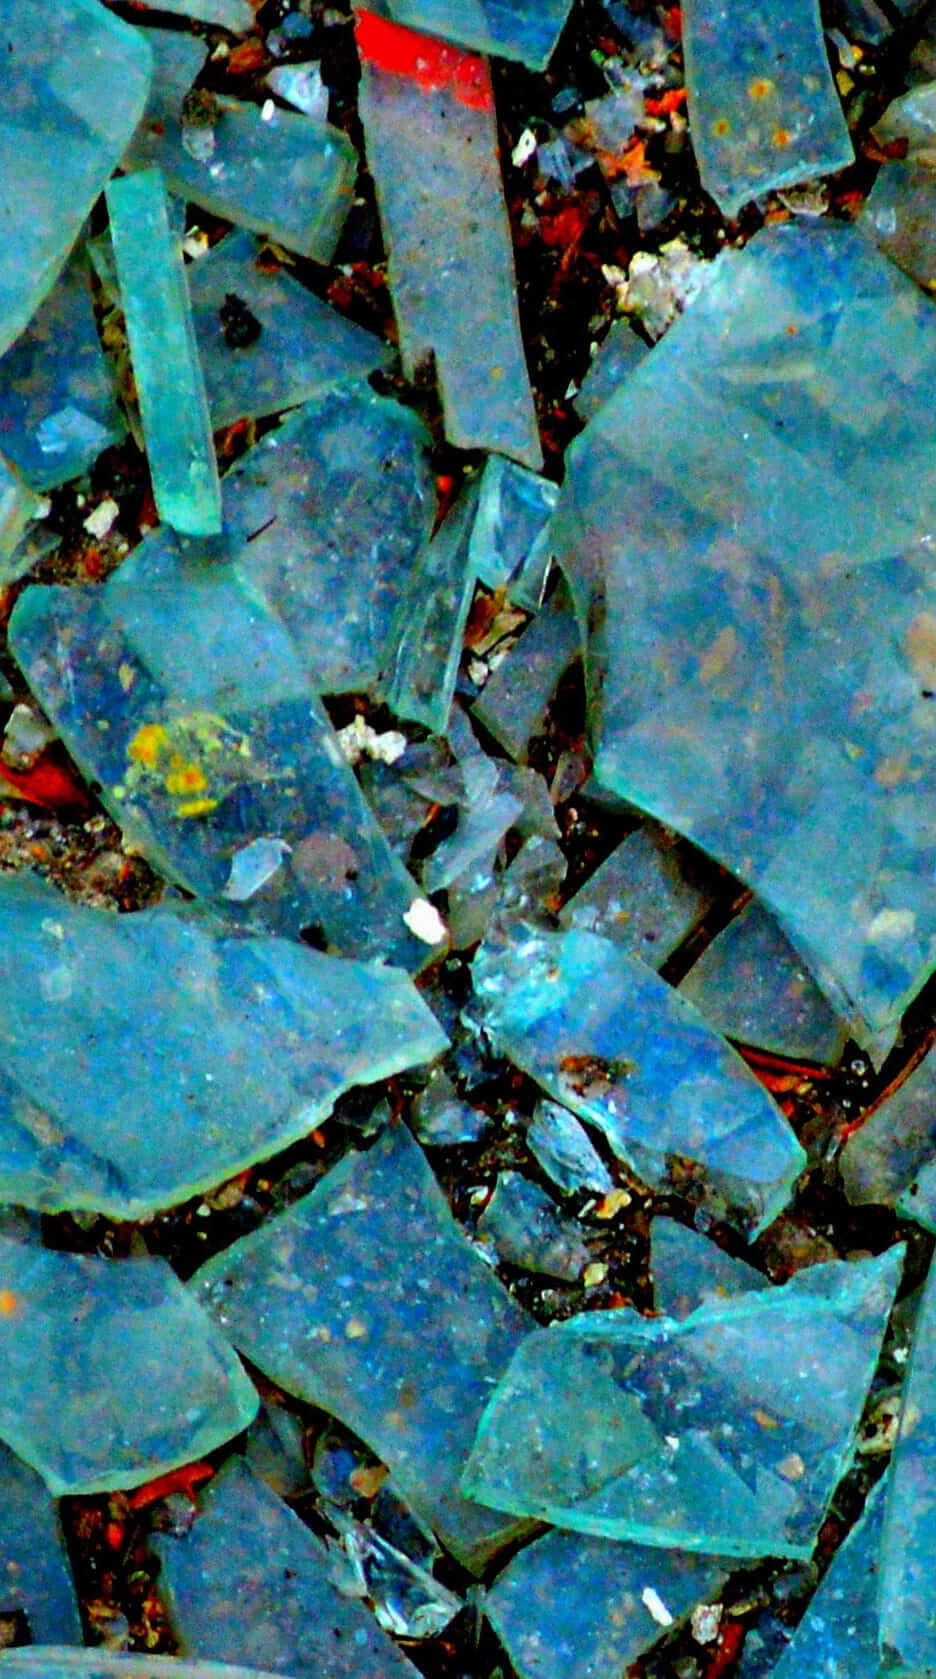 HD wallpaper blue glass fragment lot shattered broken glass shards full frame